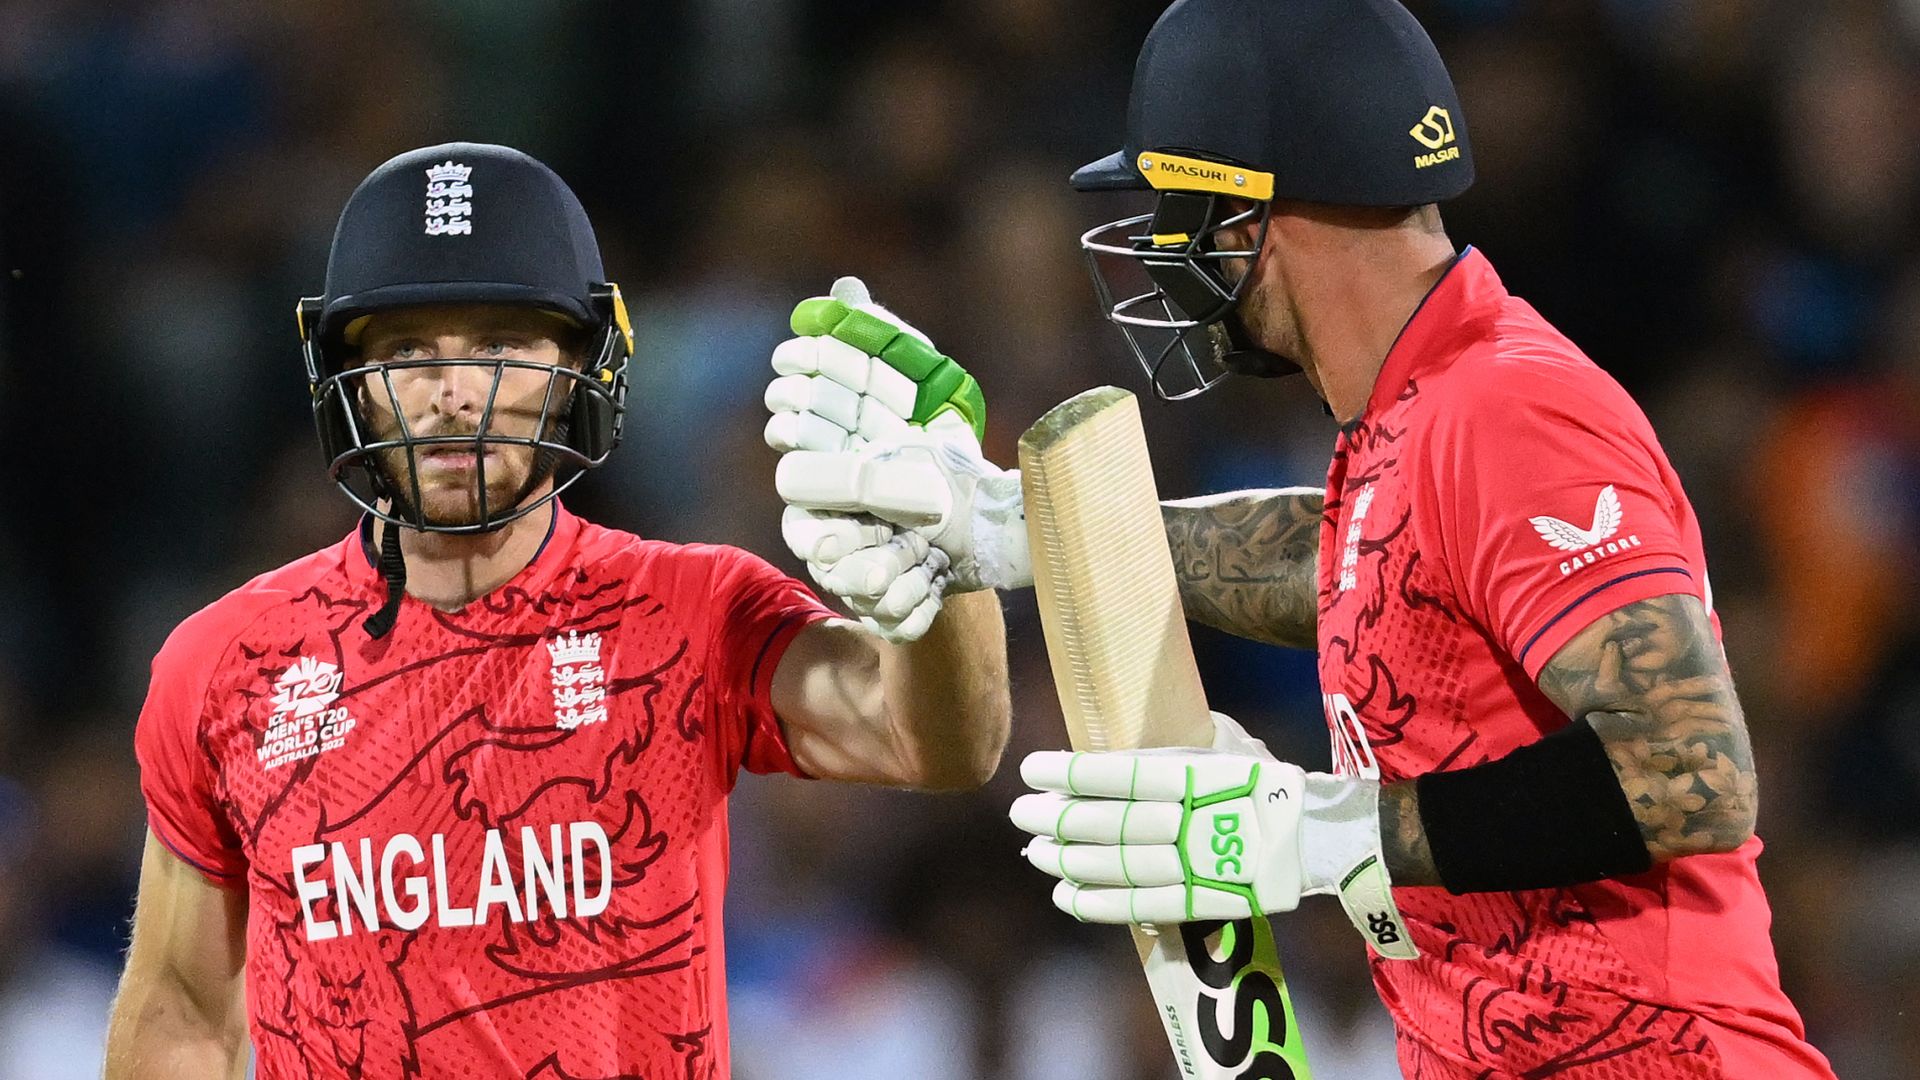 Sorotan: Inggris mencapai final WC setelah menang dominan atas India